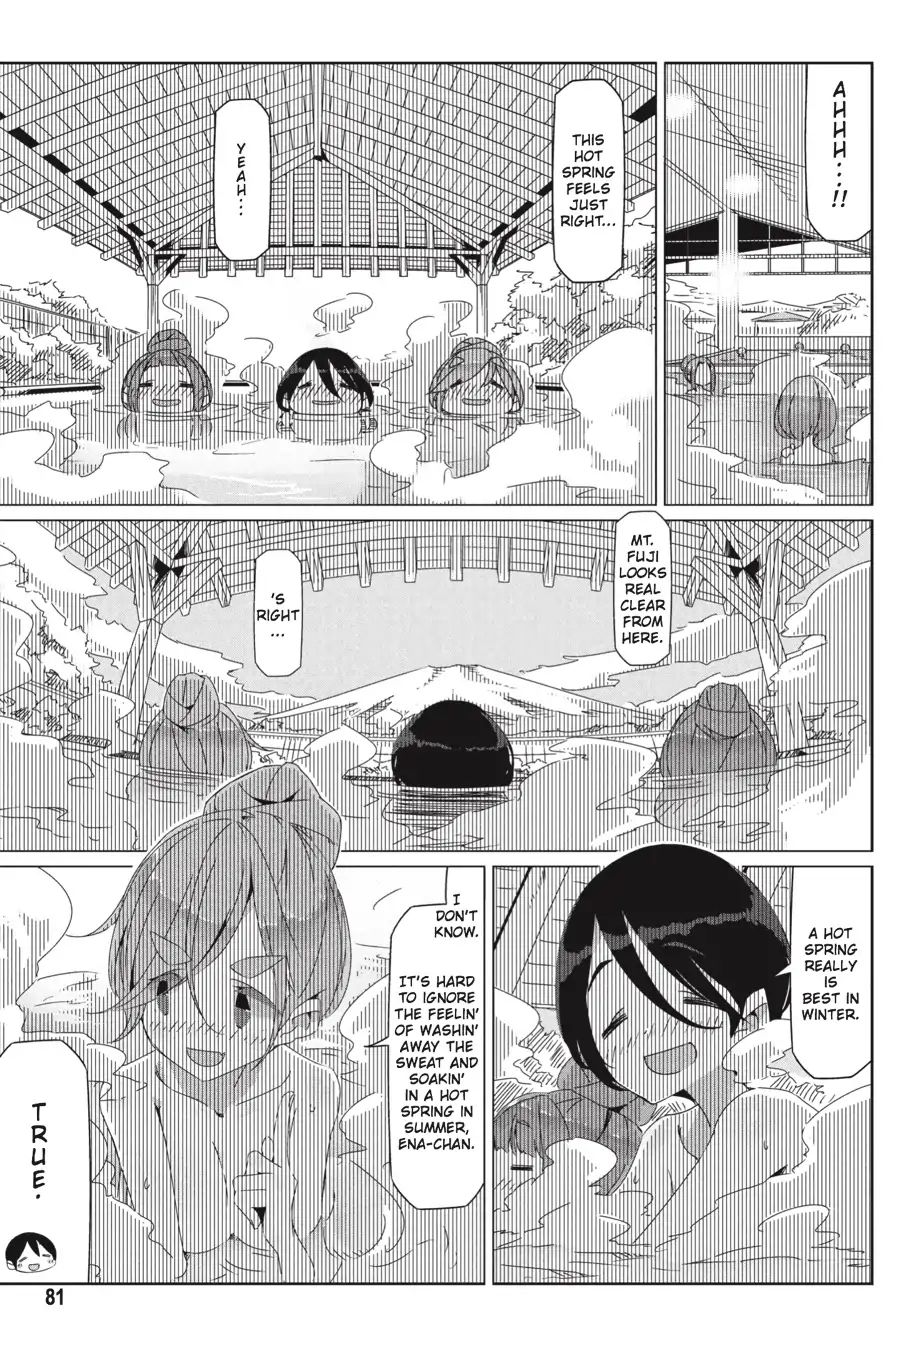 Yurucamp Vol.6 Chapter 32: Snow Country Hot Pot and Lake Yamanaka